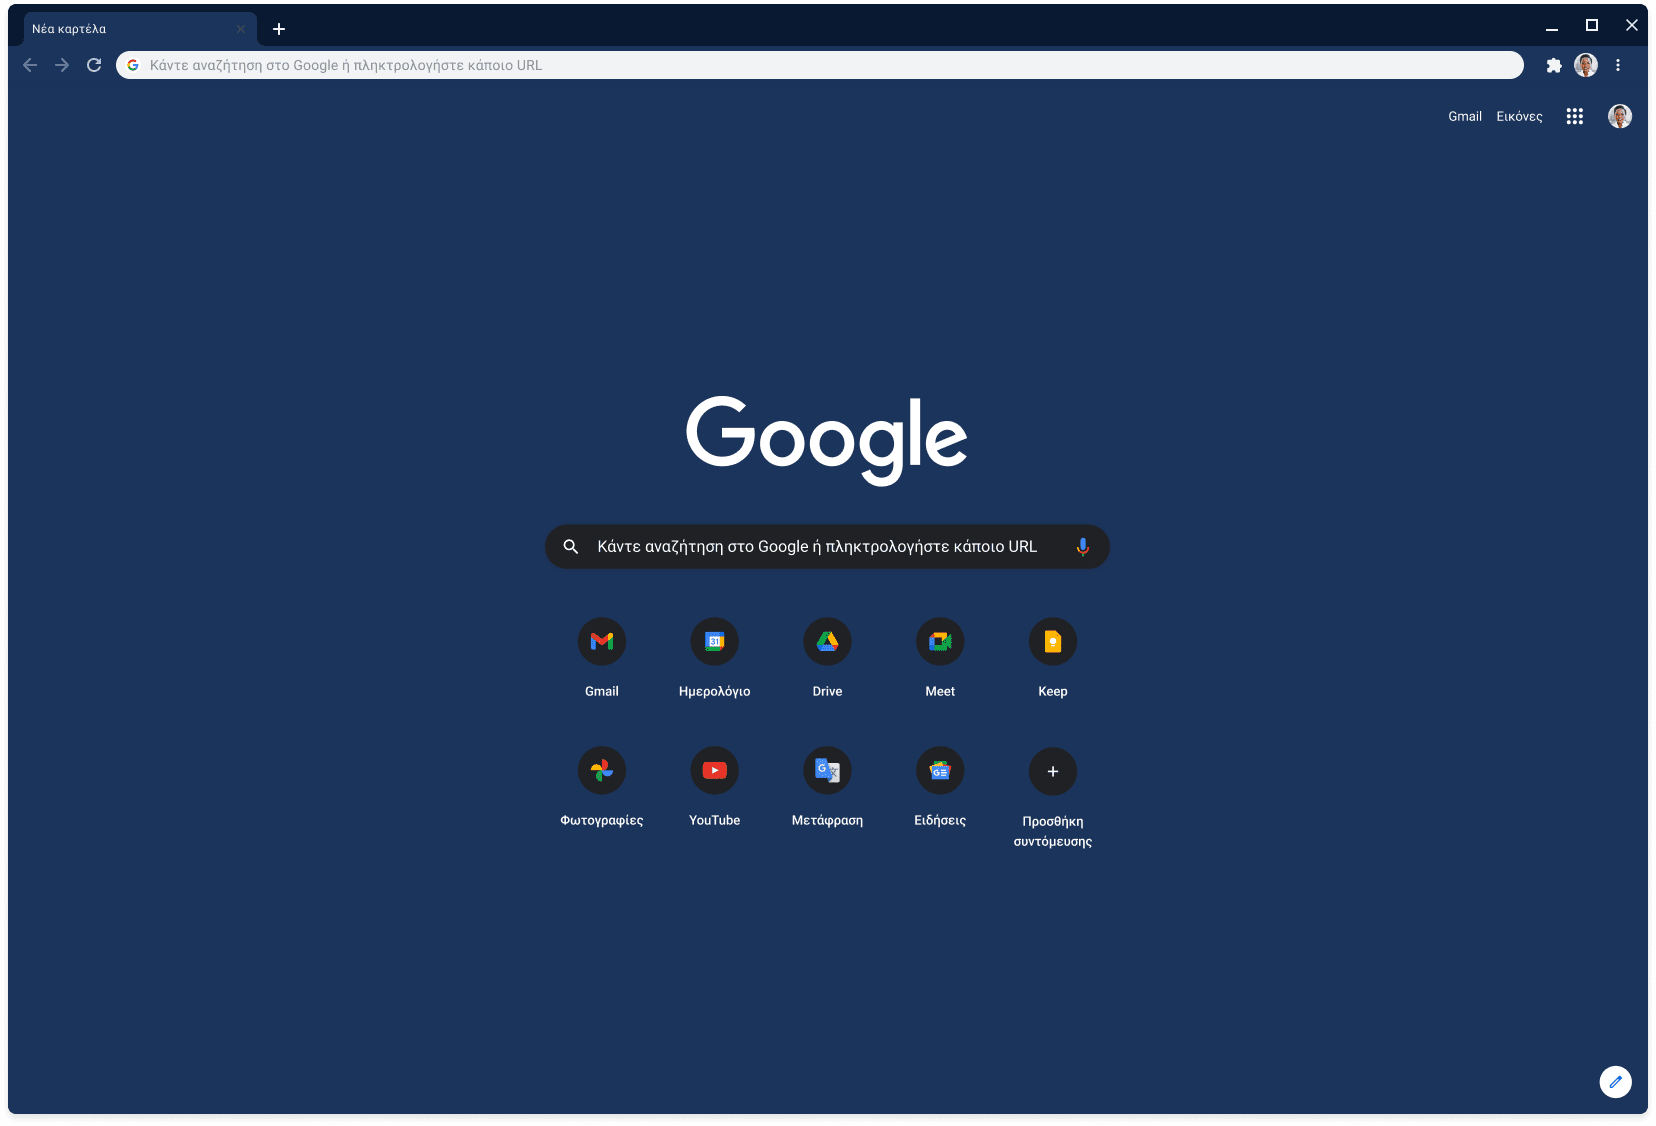 Παράθυρο του προγράμματος περιήγησης Chrome στο οποίο εμφανίζεται ο ιστότοπος Google.com. Χρησιμοποιείται το σκούρο γκρι θέμα.